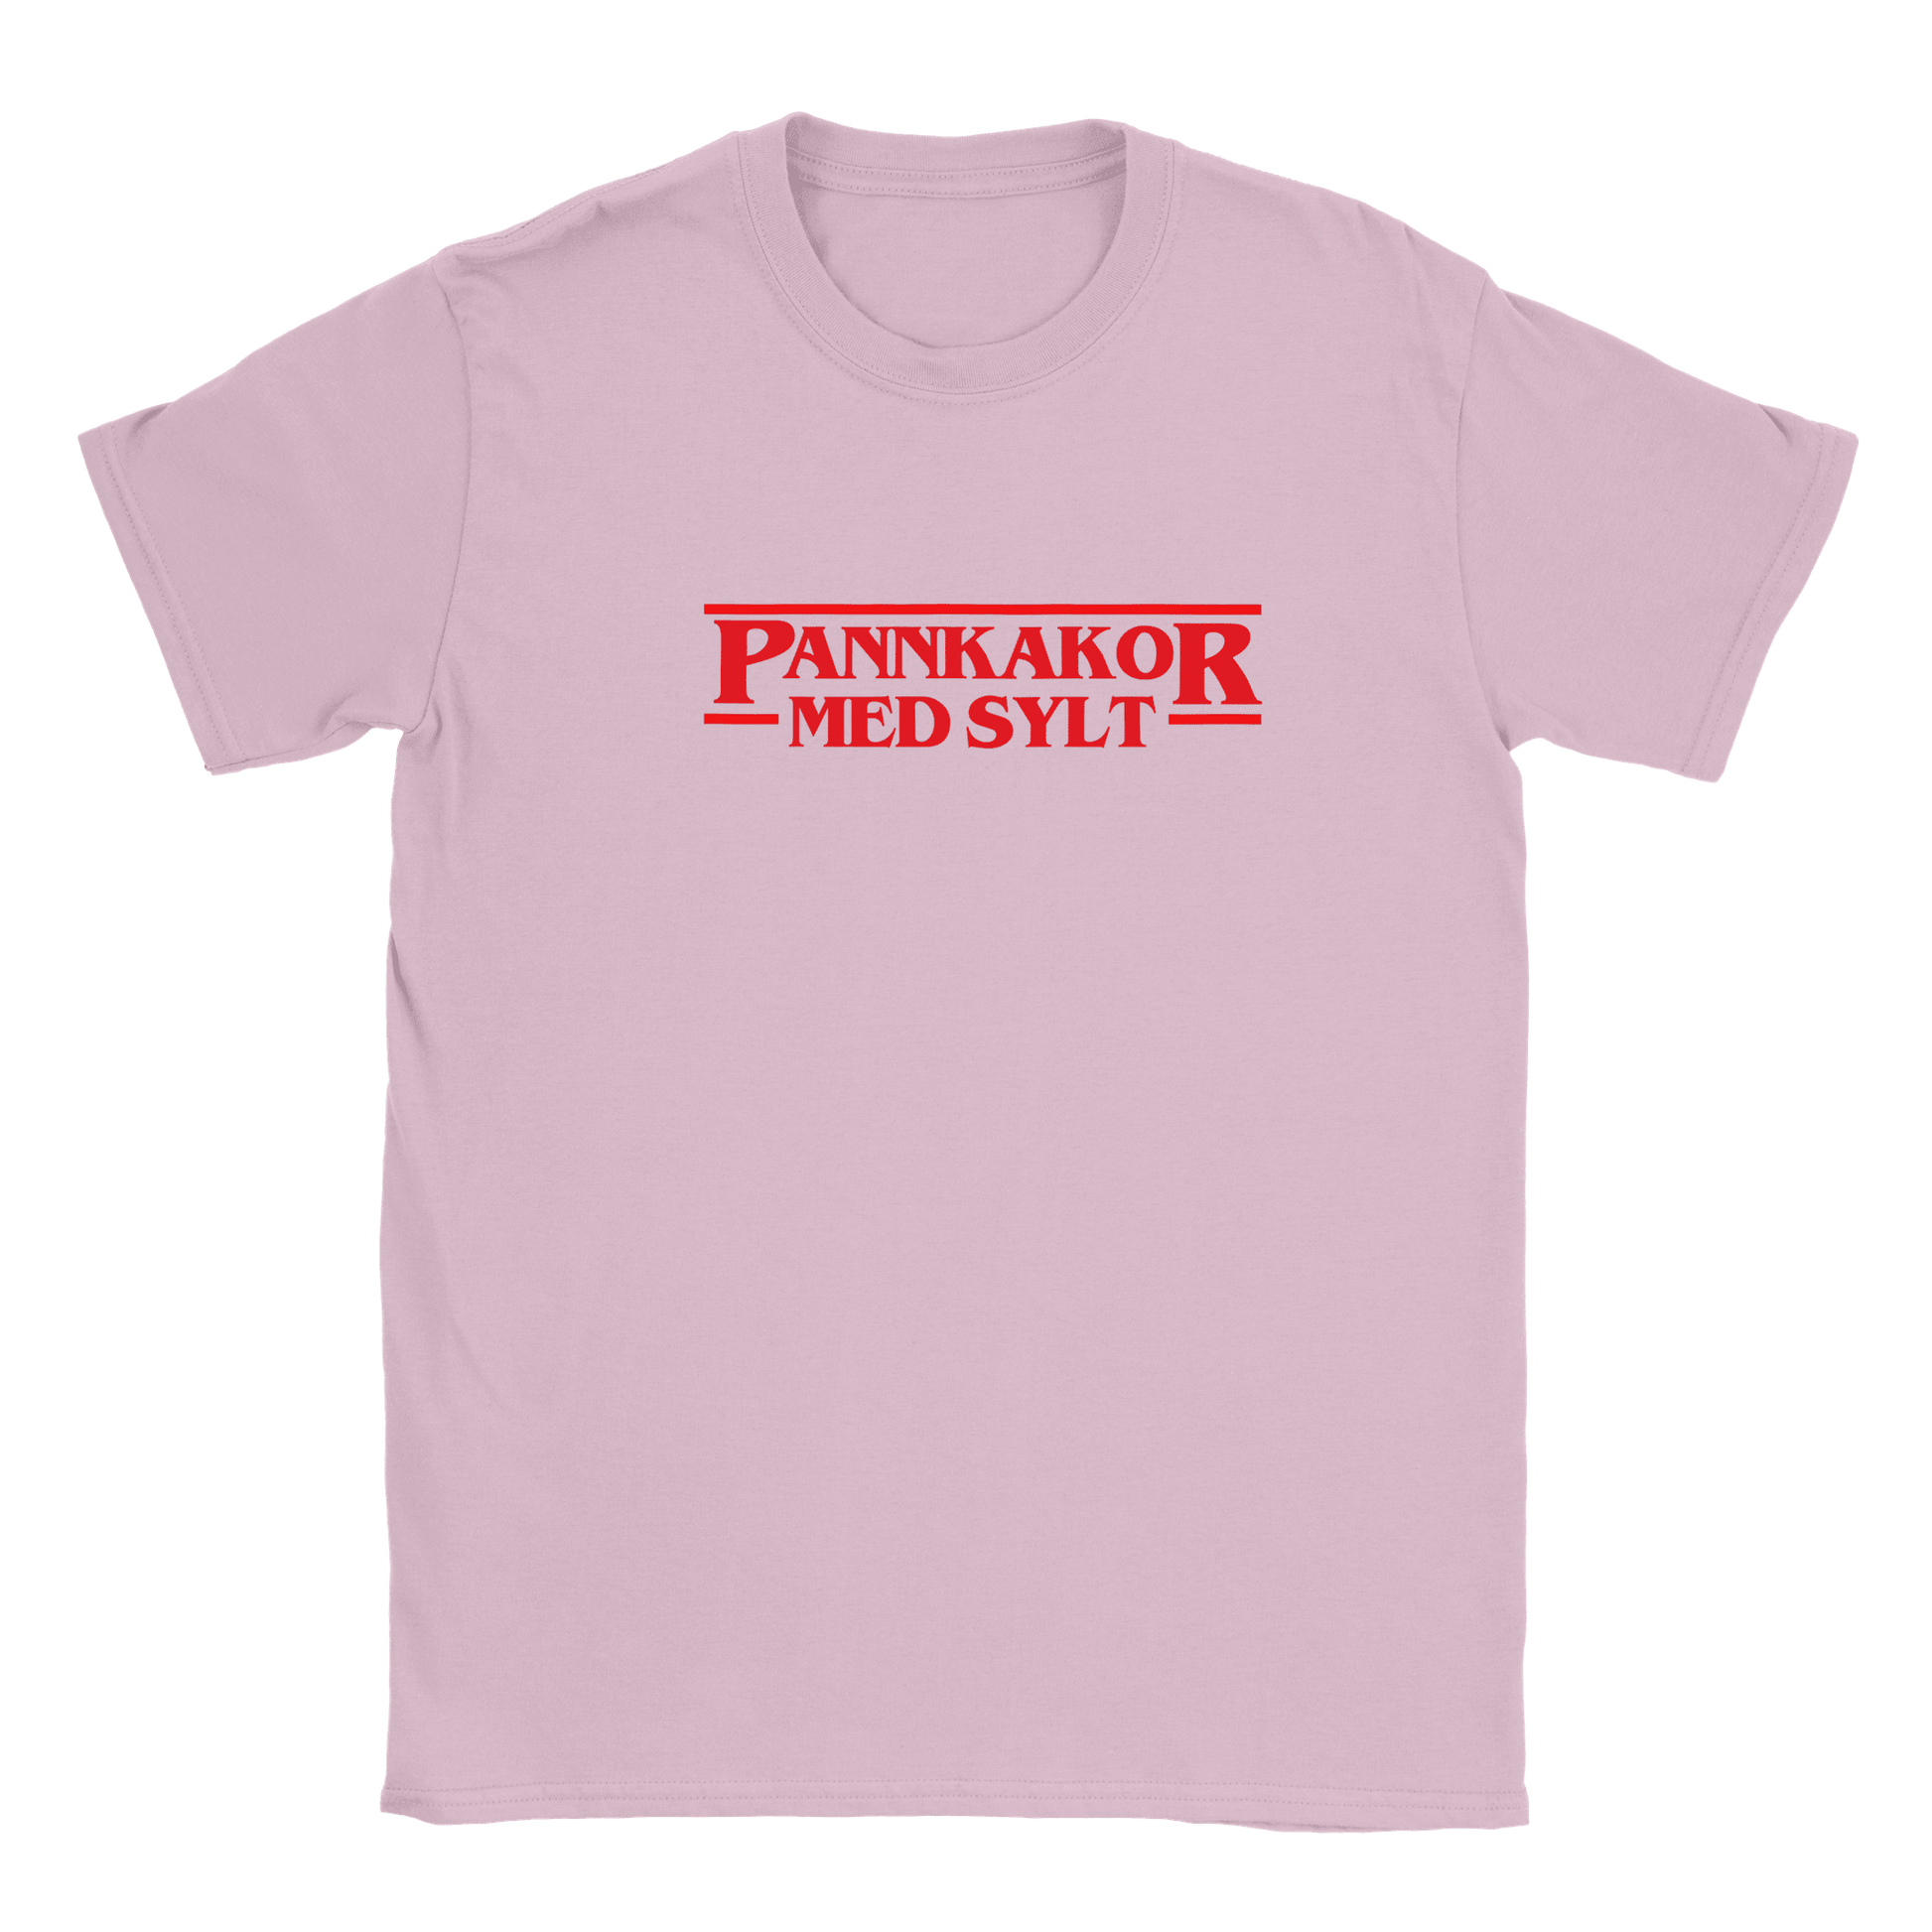 Pannkakor med sylt - T-shirt för barn Rosa